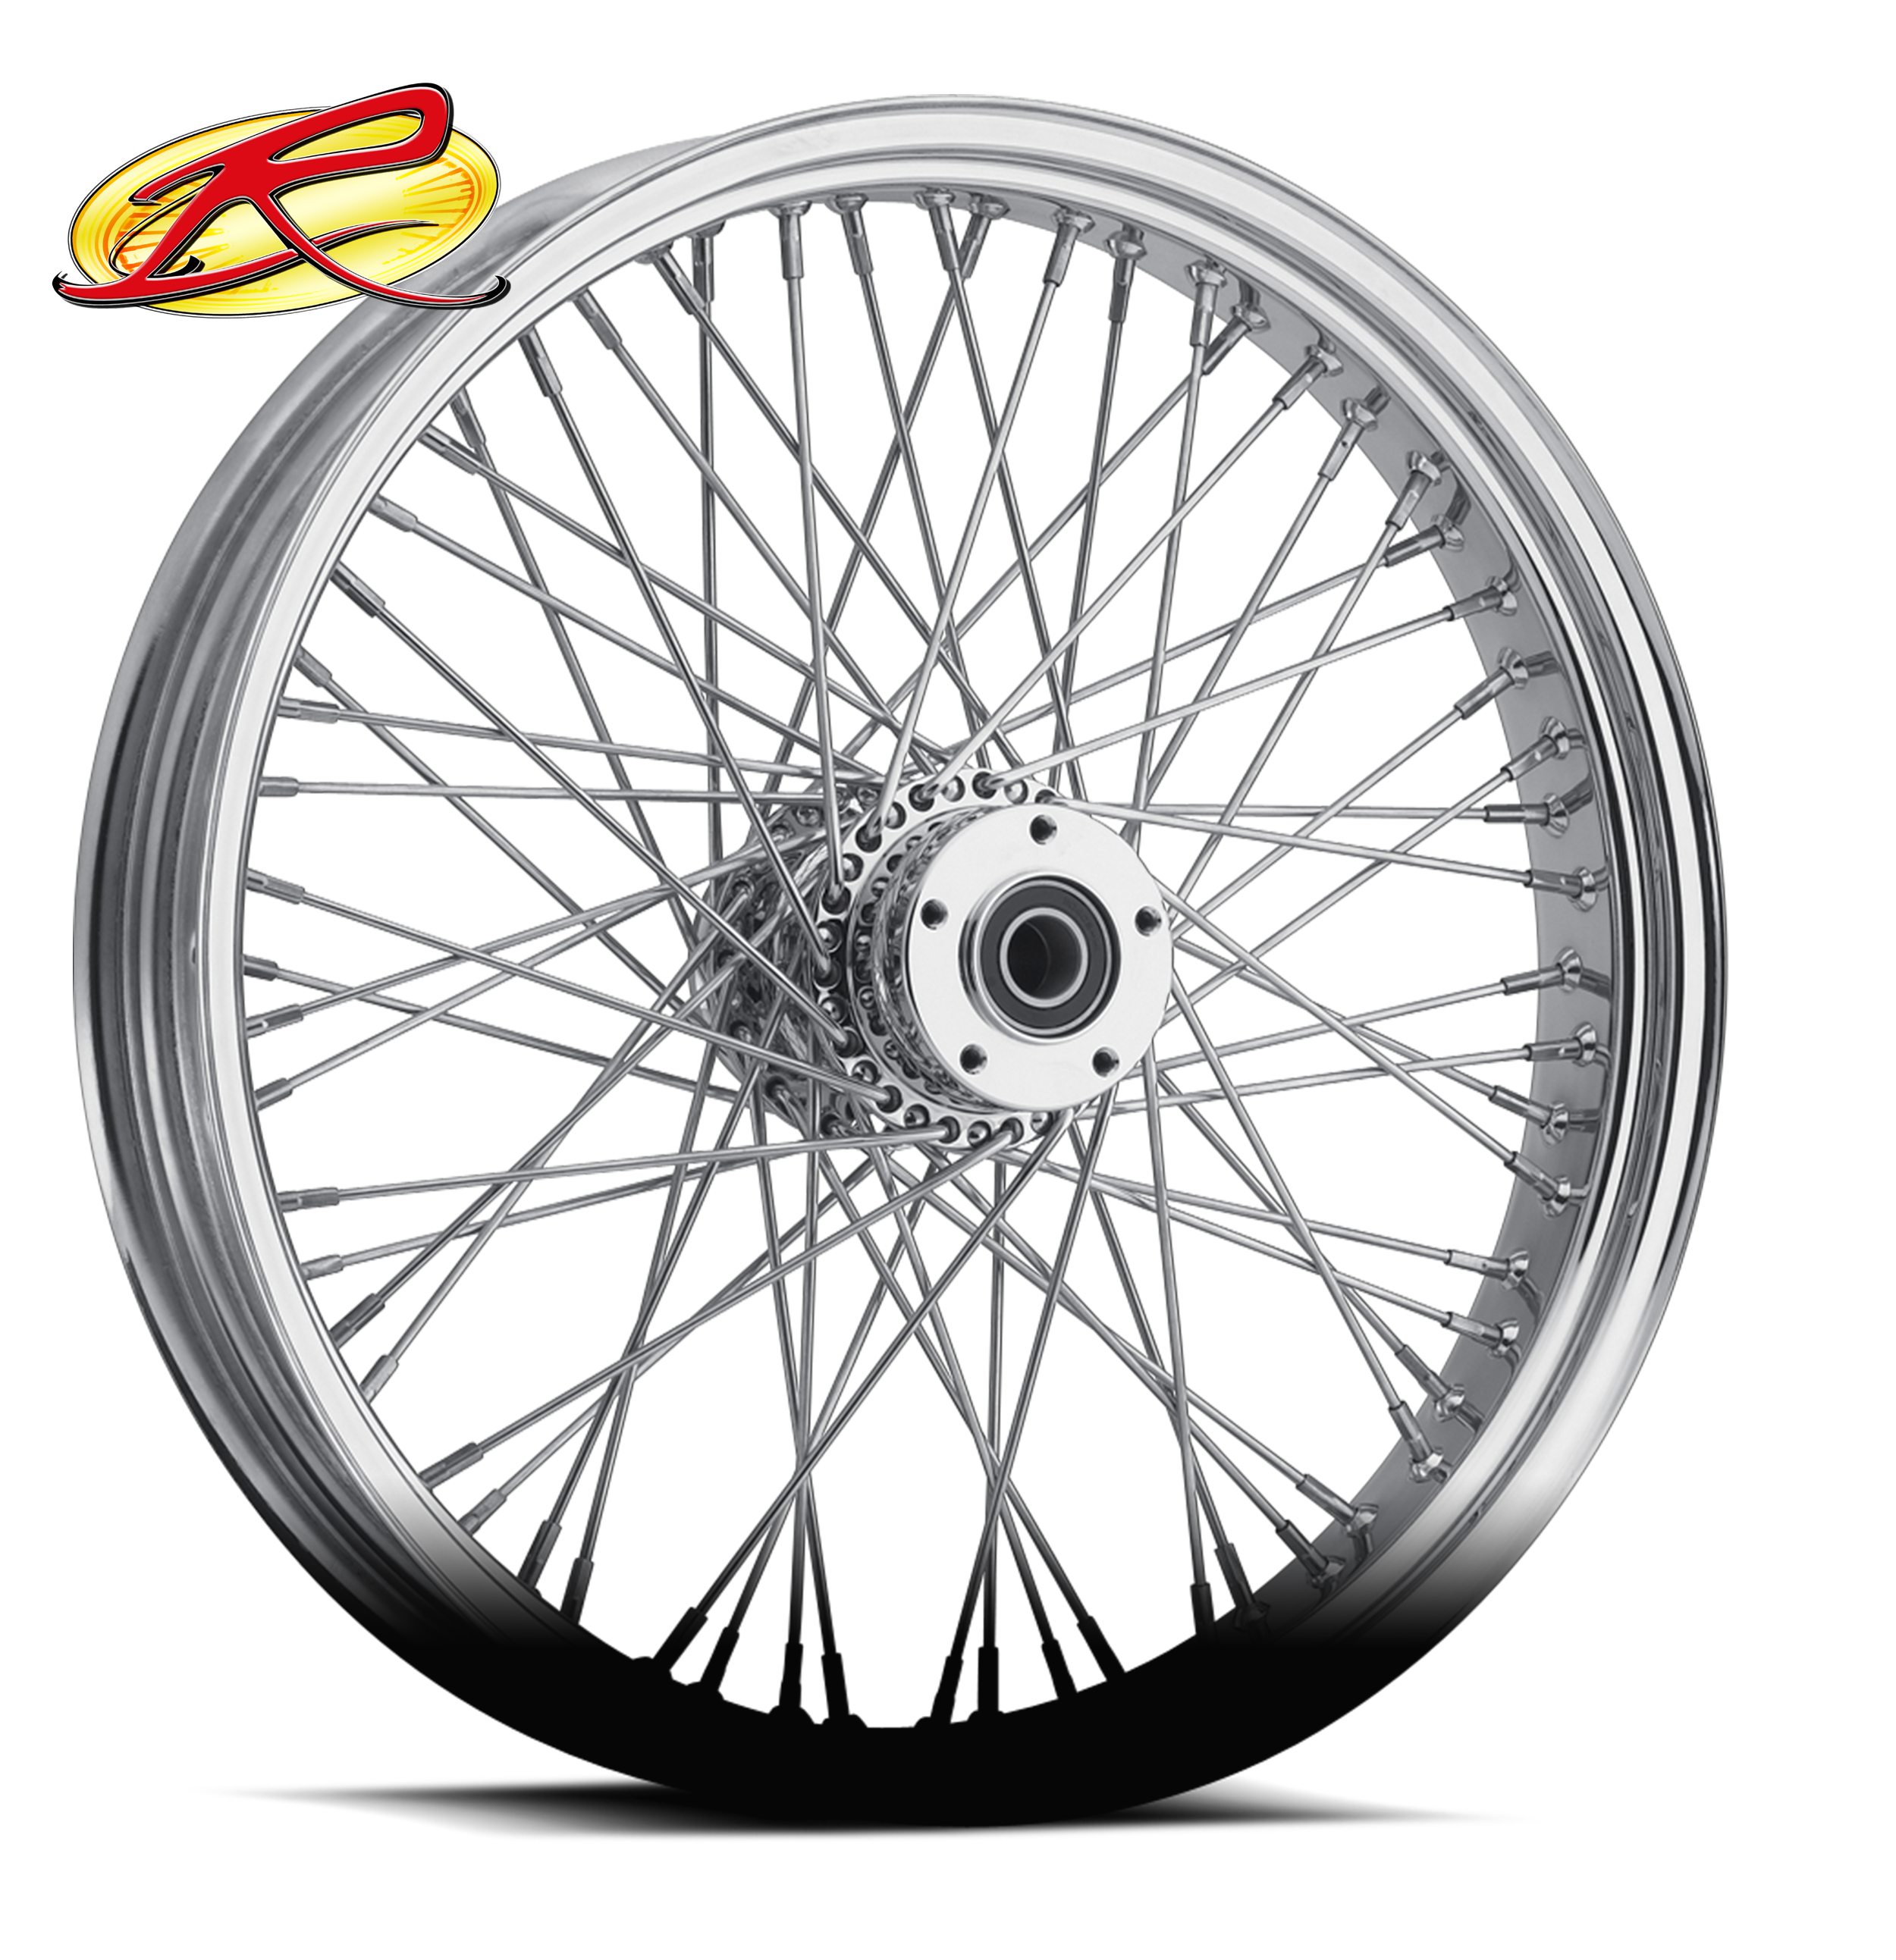 60 Spoke Motorcycle Wheels